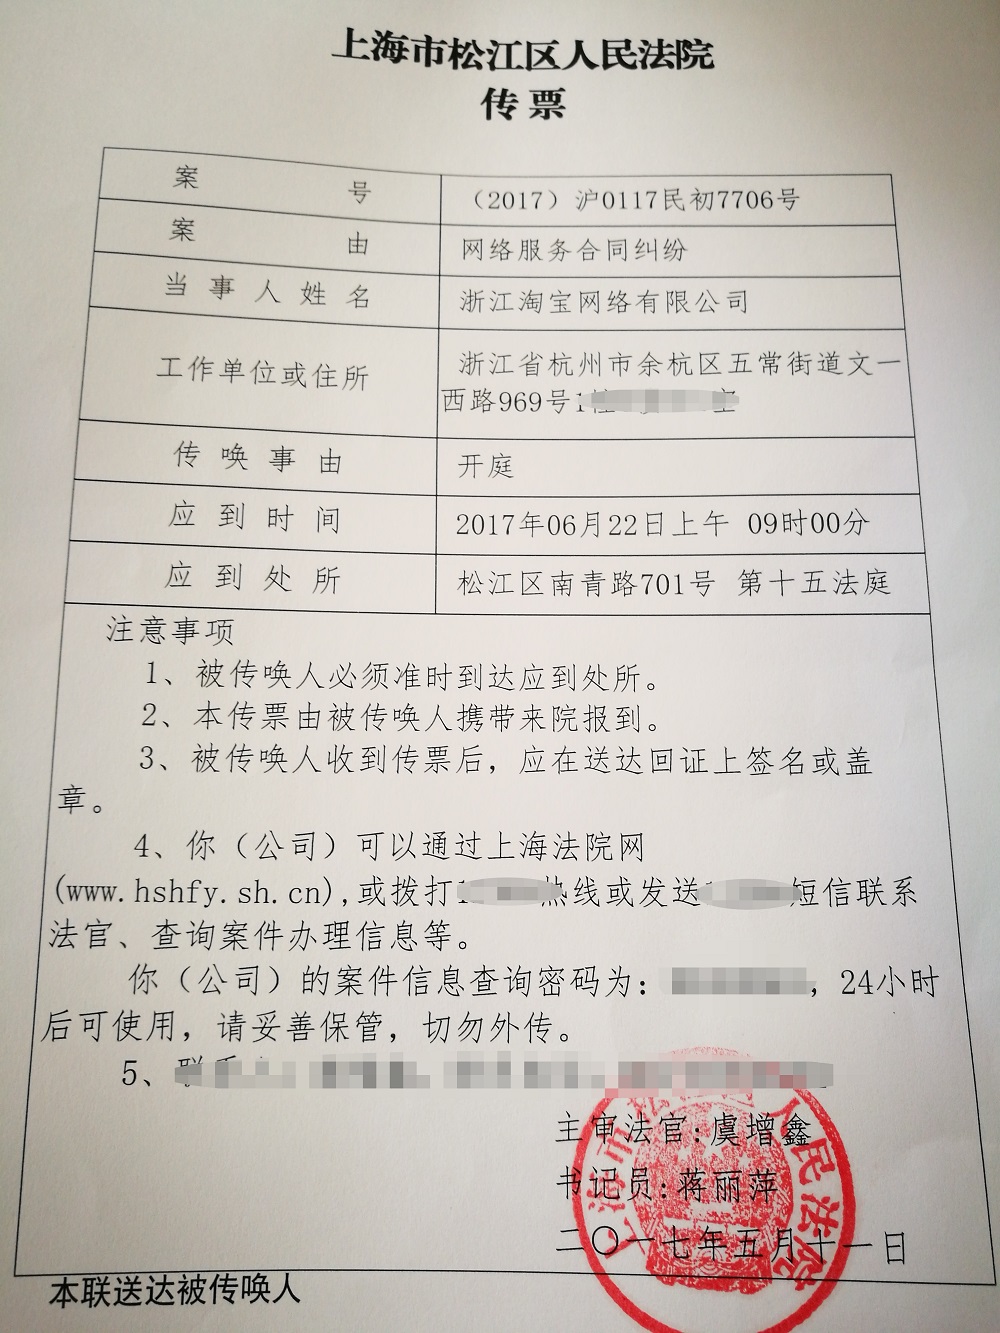 上海市松江區人民法院就案件發出的傳票。